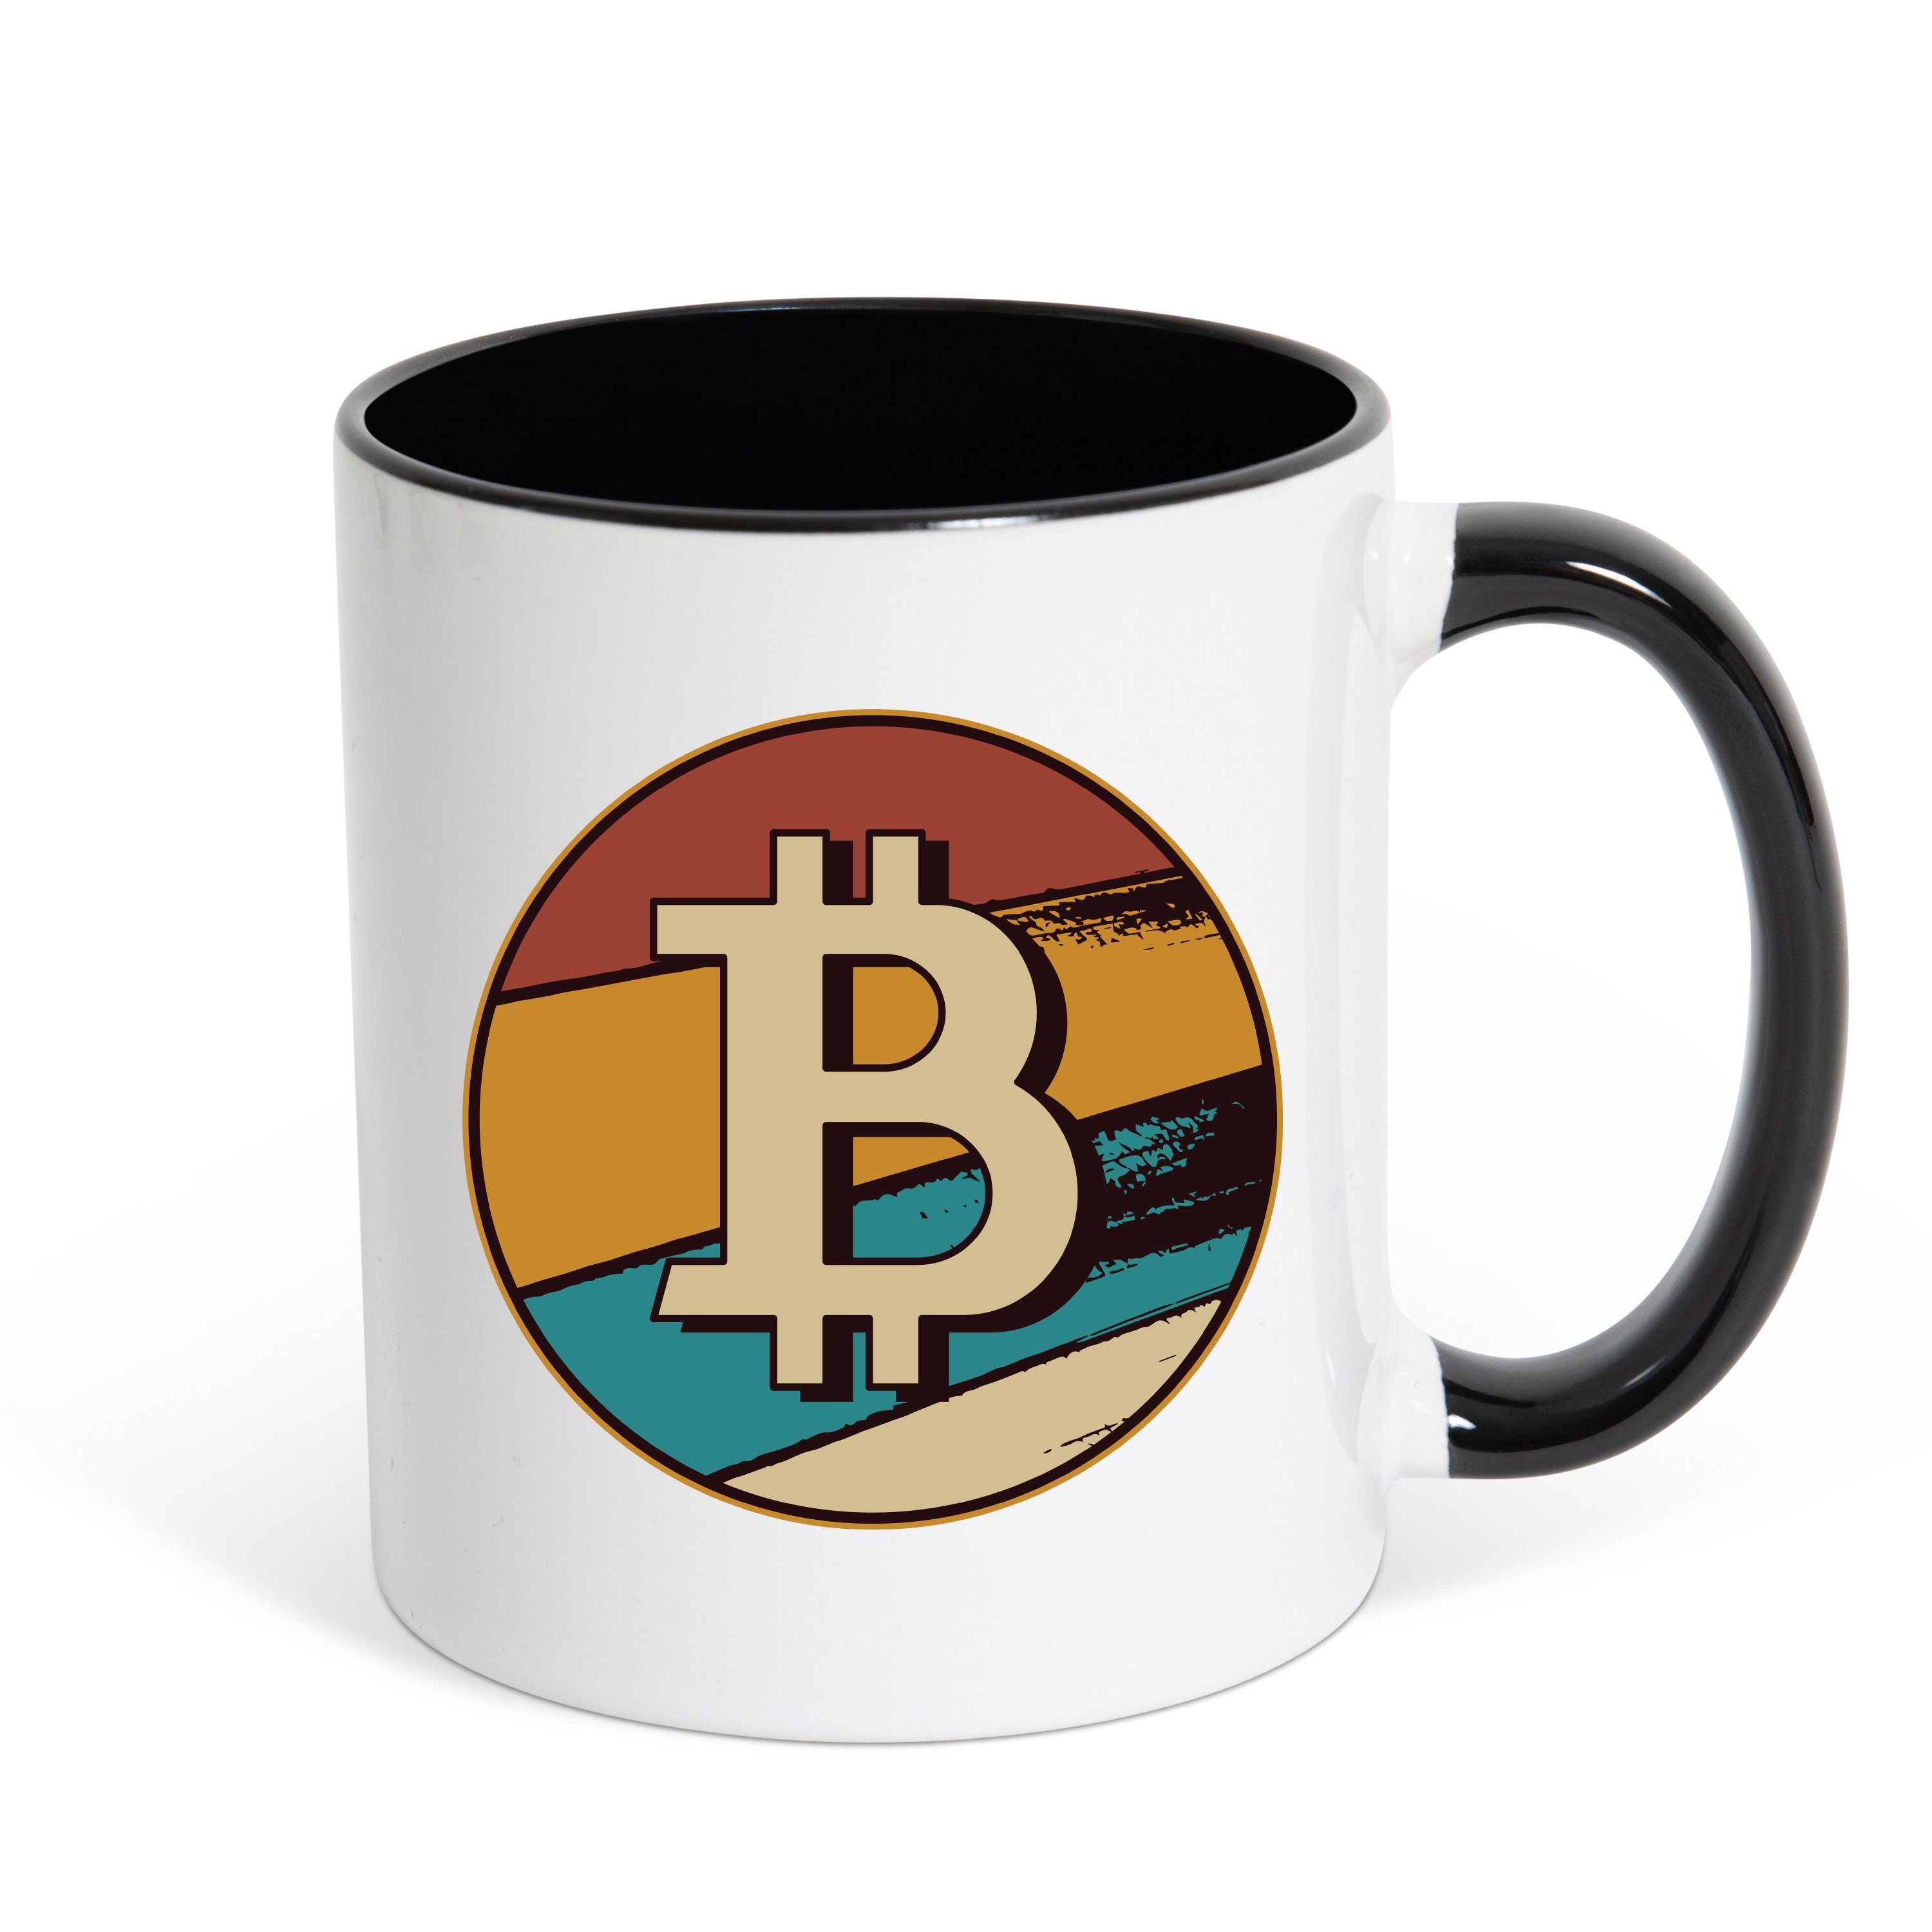 Youth Designz Tasse Bitcoin Crypto Kaffeetasse Geschenk mit Coin Print, Keramik, mit trendigem Print Weiss/Schwarz